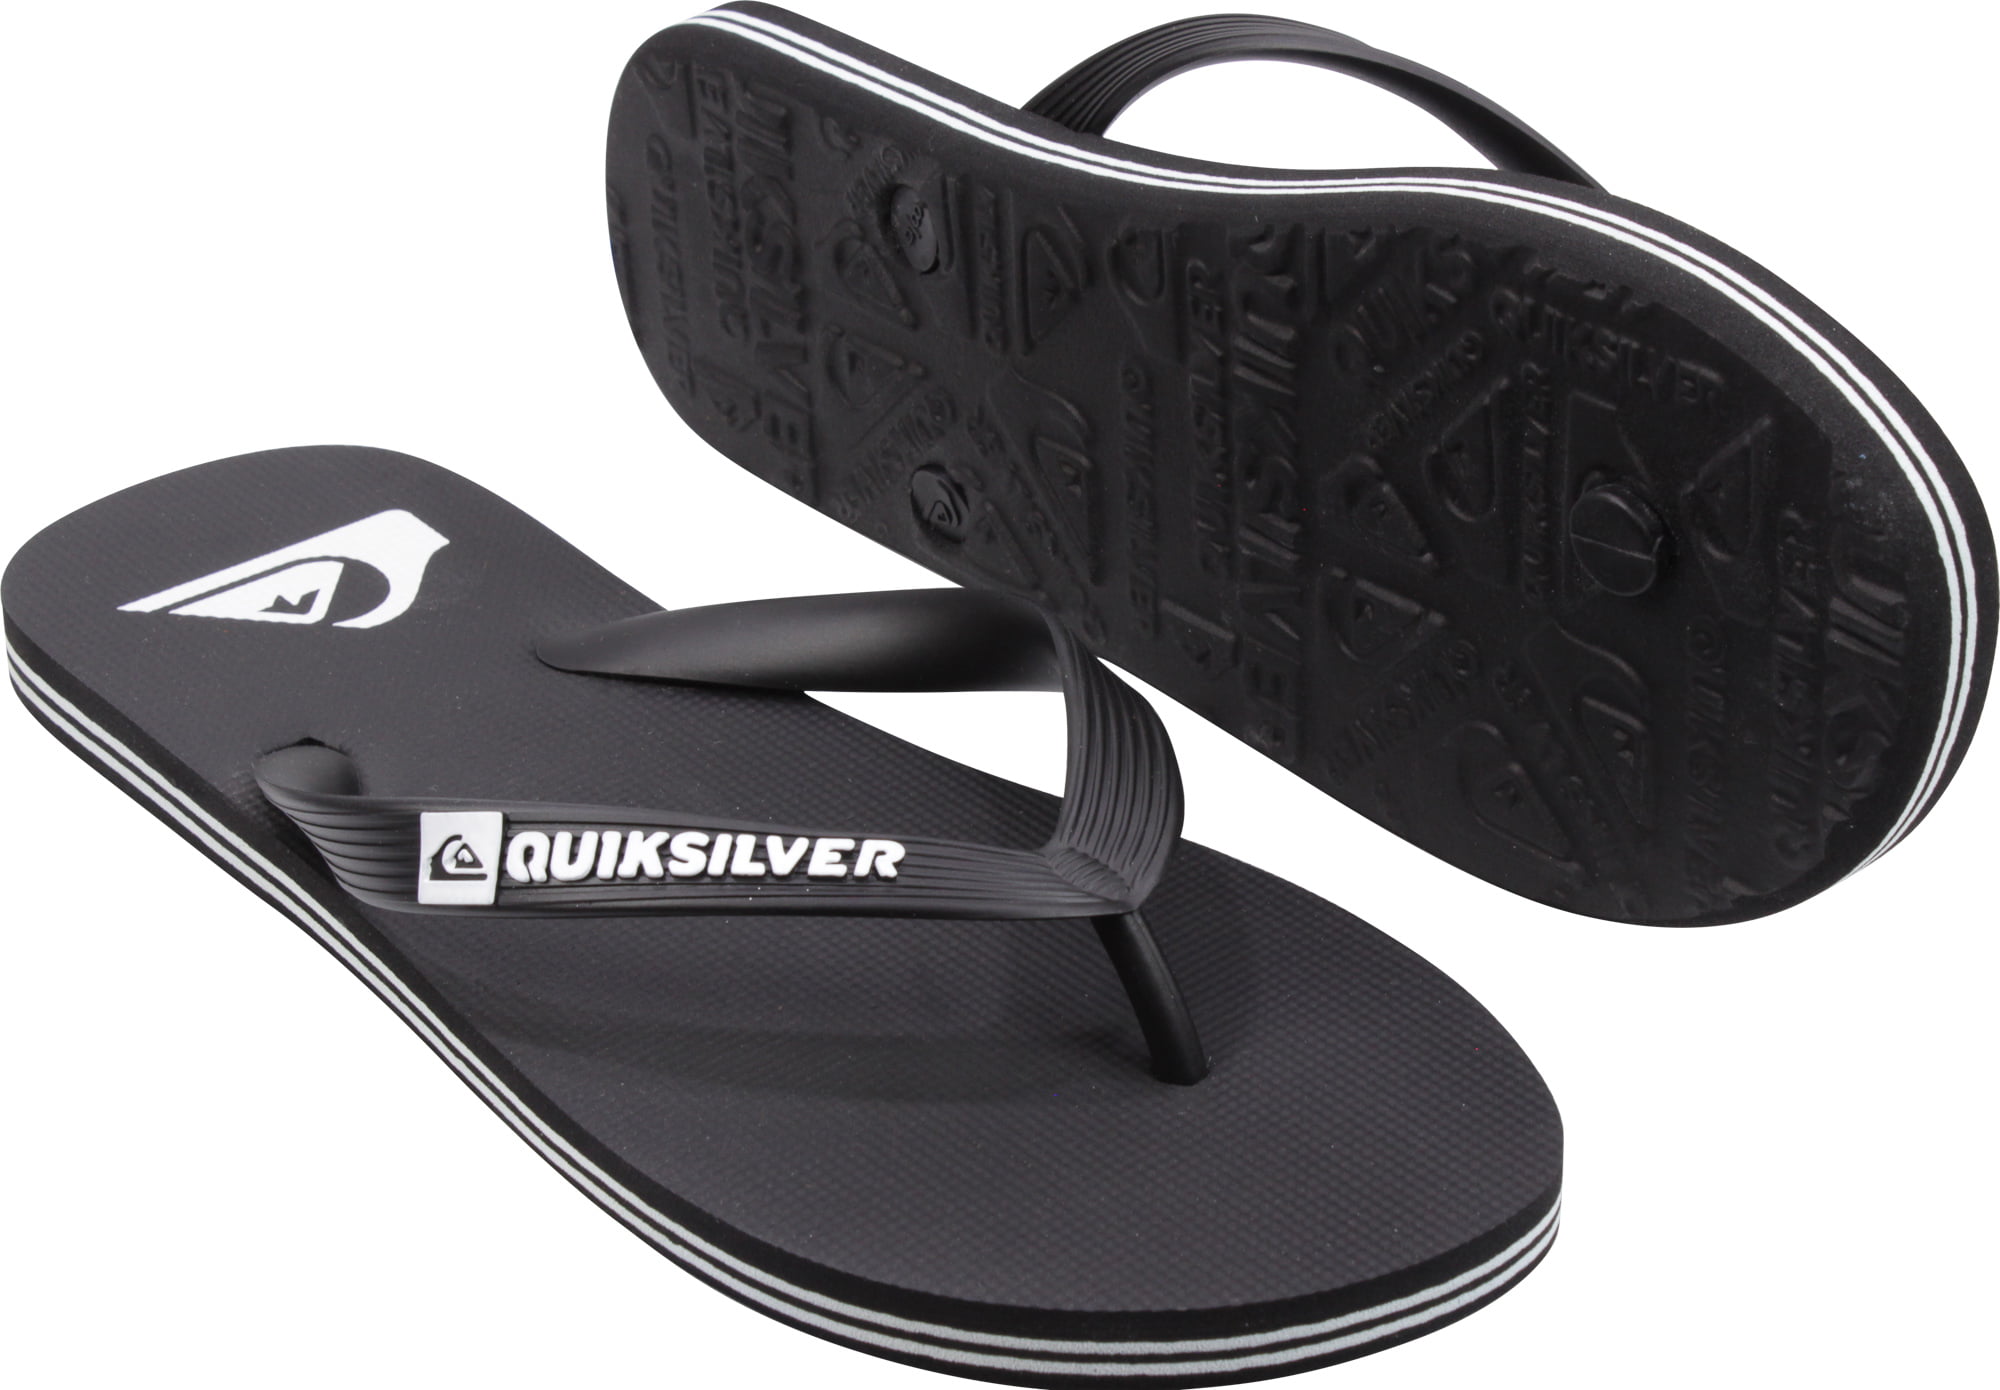 E11 Quiksilver Coastal Oasis Sandals Flip Flops New Mens 14 Tan #27310-D1 